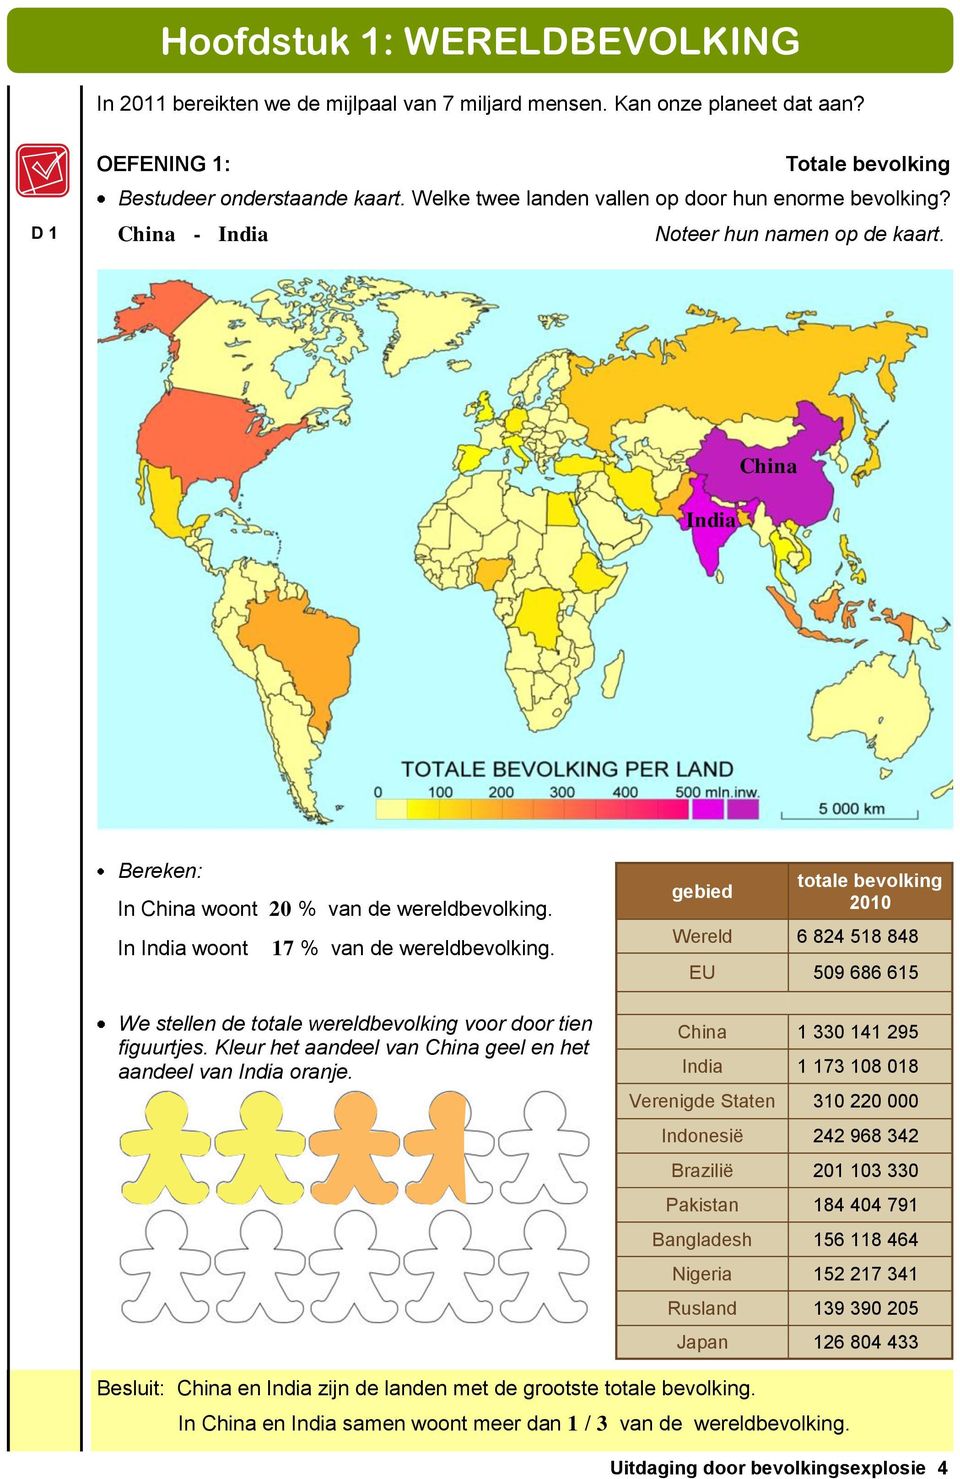 In India woont 17 % van de wereldbevolking. We stellen de totale wereldbevolking voor door tien figuurtjes. Kleur het aandeel van China geel en het aandeel van India oranje.